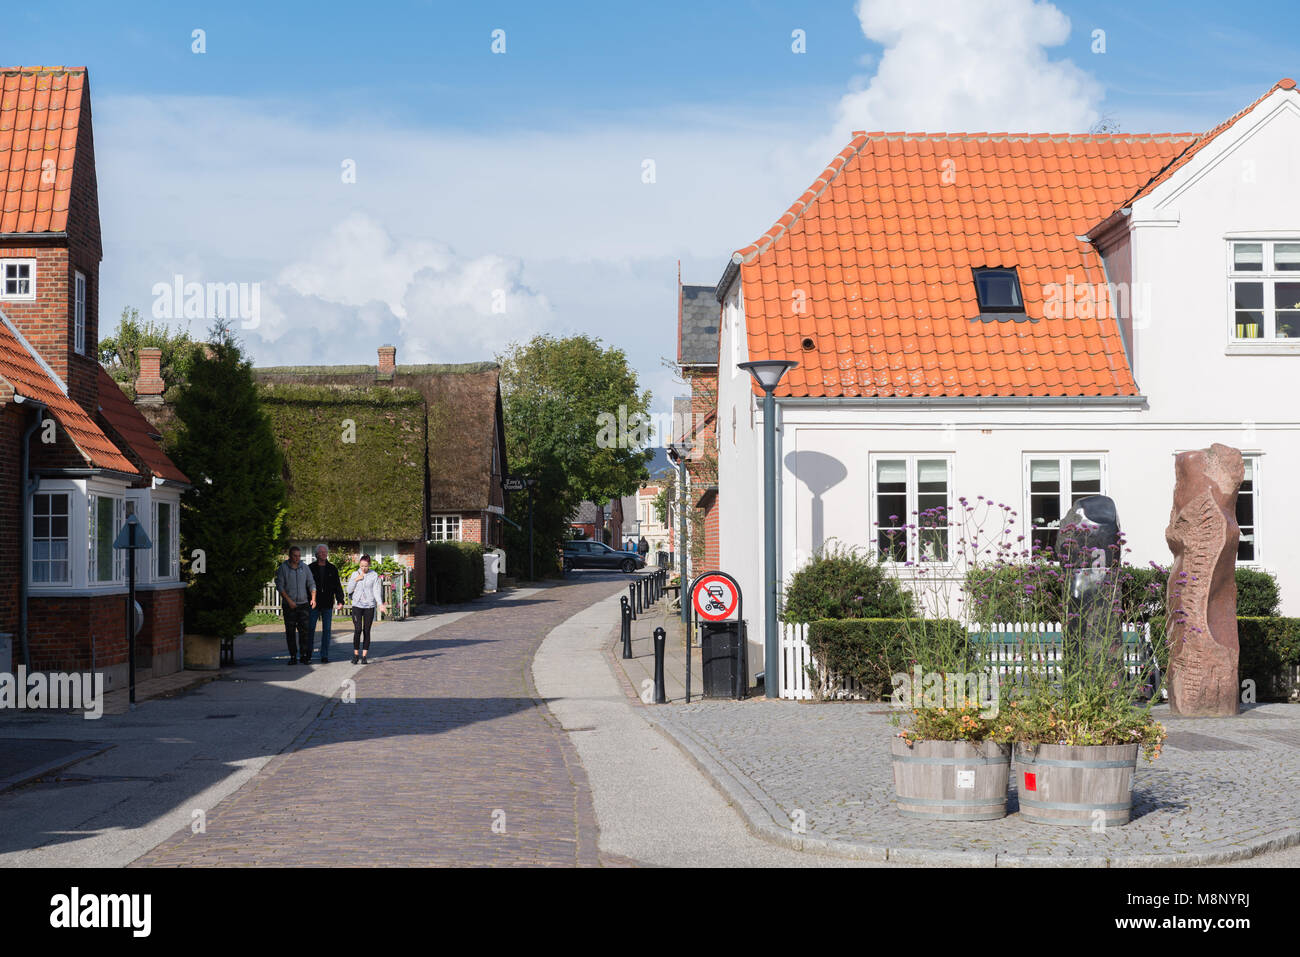 Ciottoli stone street attraverso il centro della città, tipiche case danese in Nordby, isola di Fanoe, nello Jutland, Danimarca e Scandinavia Foto Stock